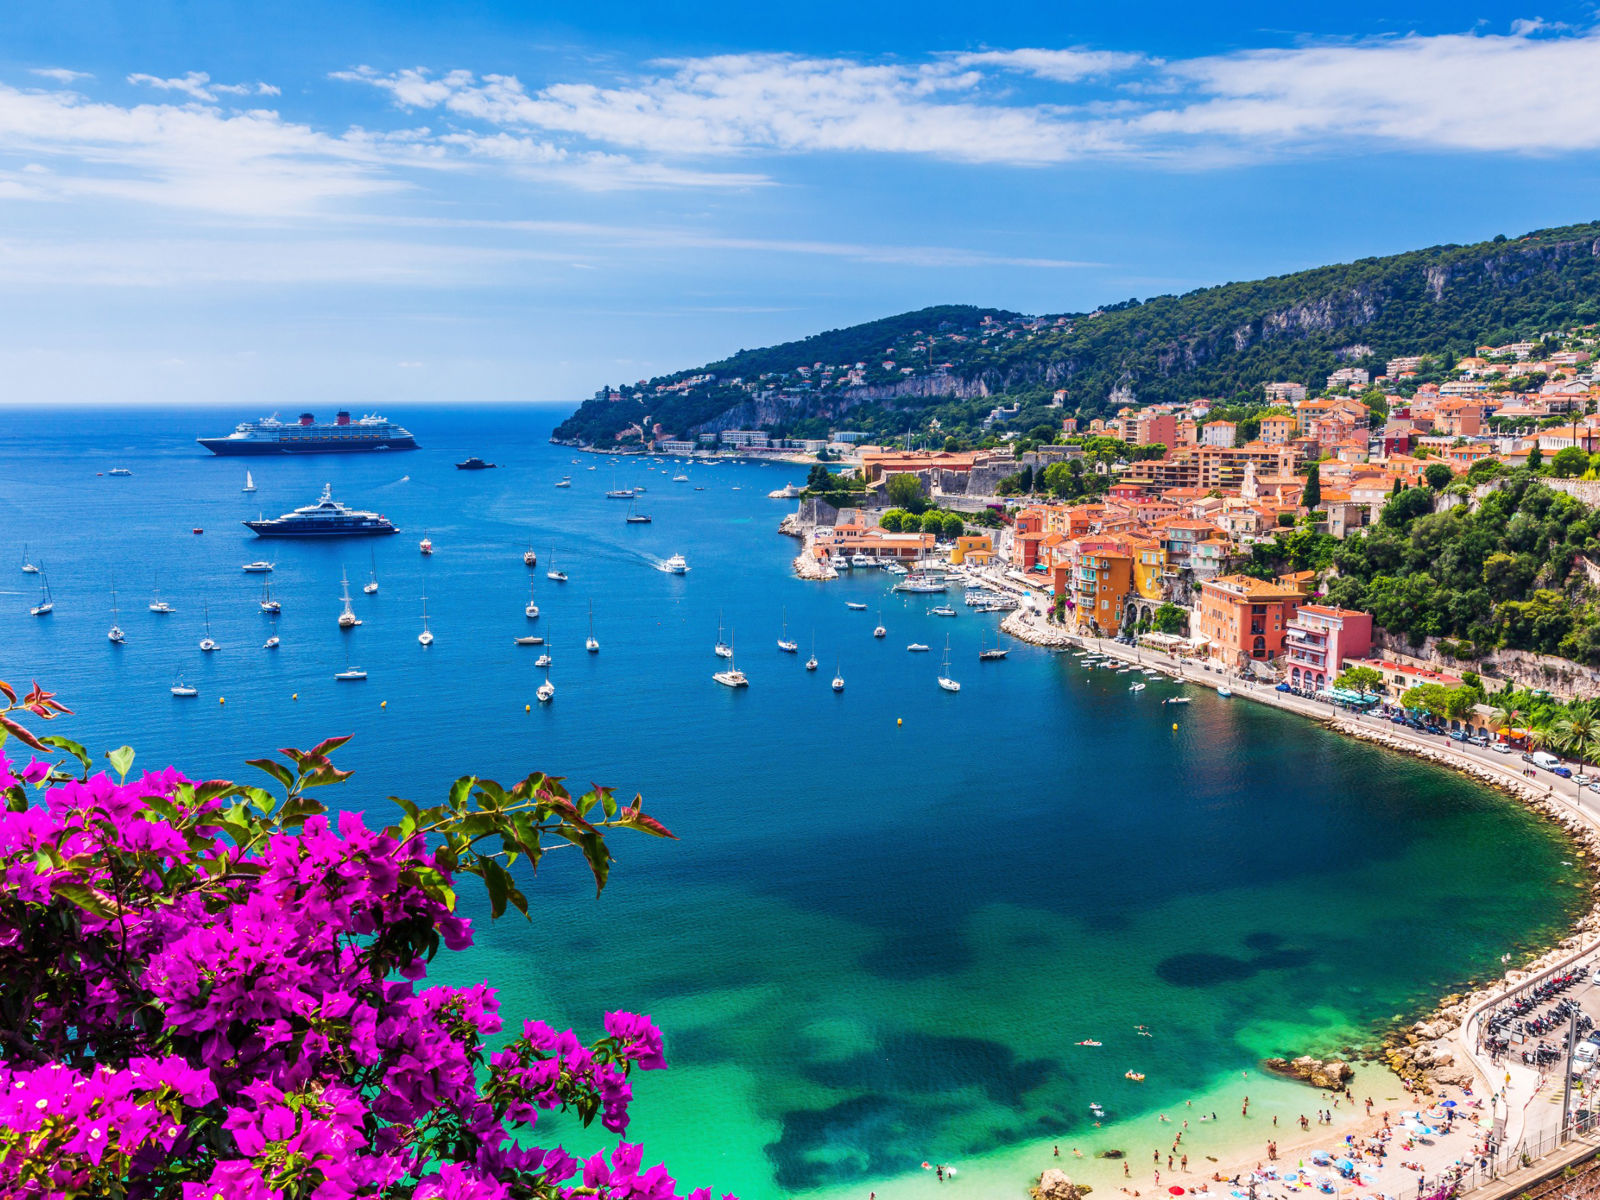 Resa till Franska Rivieran - Bukt med blått hav och båter, grönska och stenstrand runt omkring